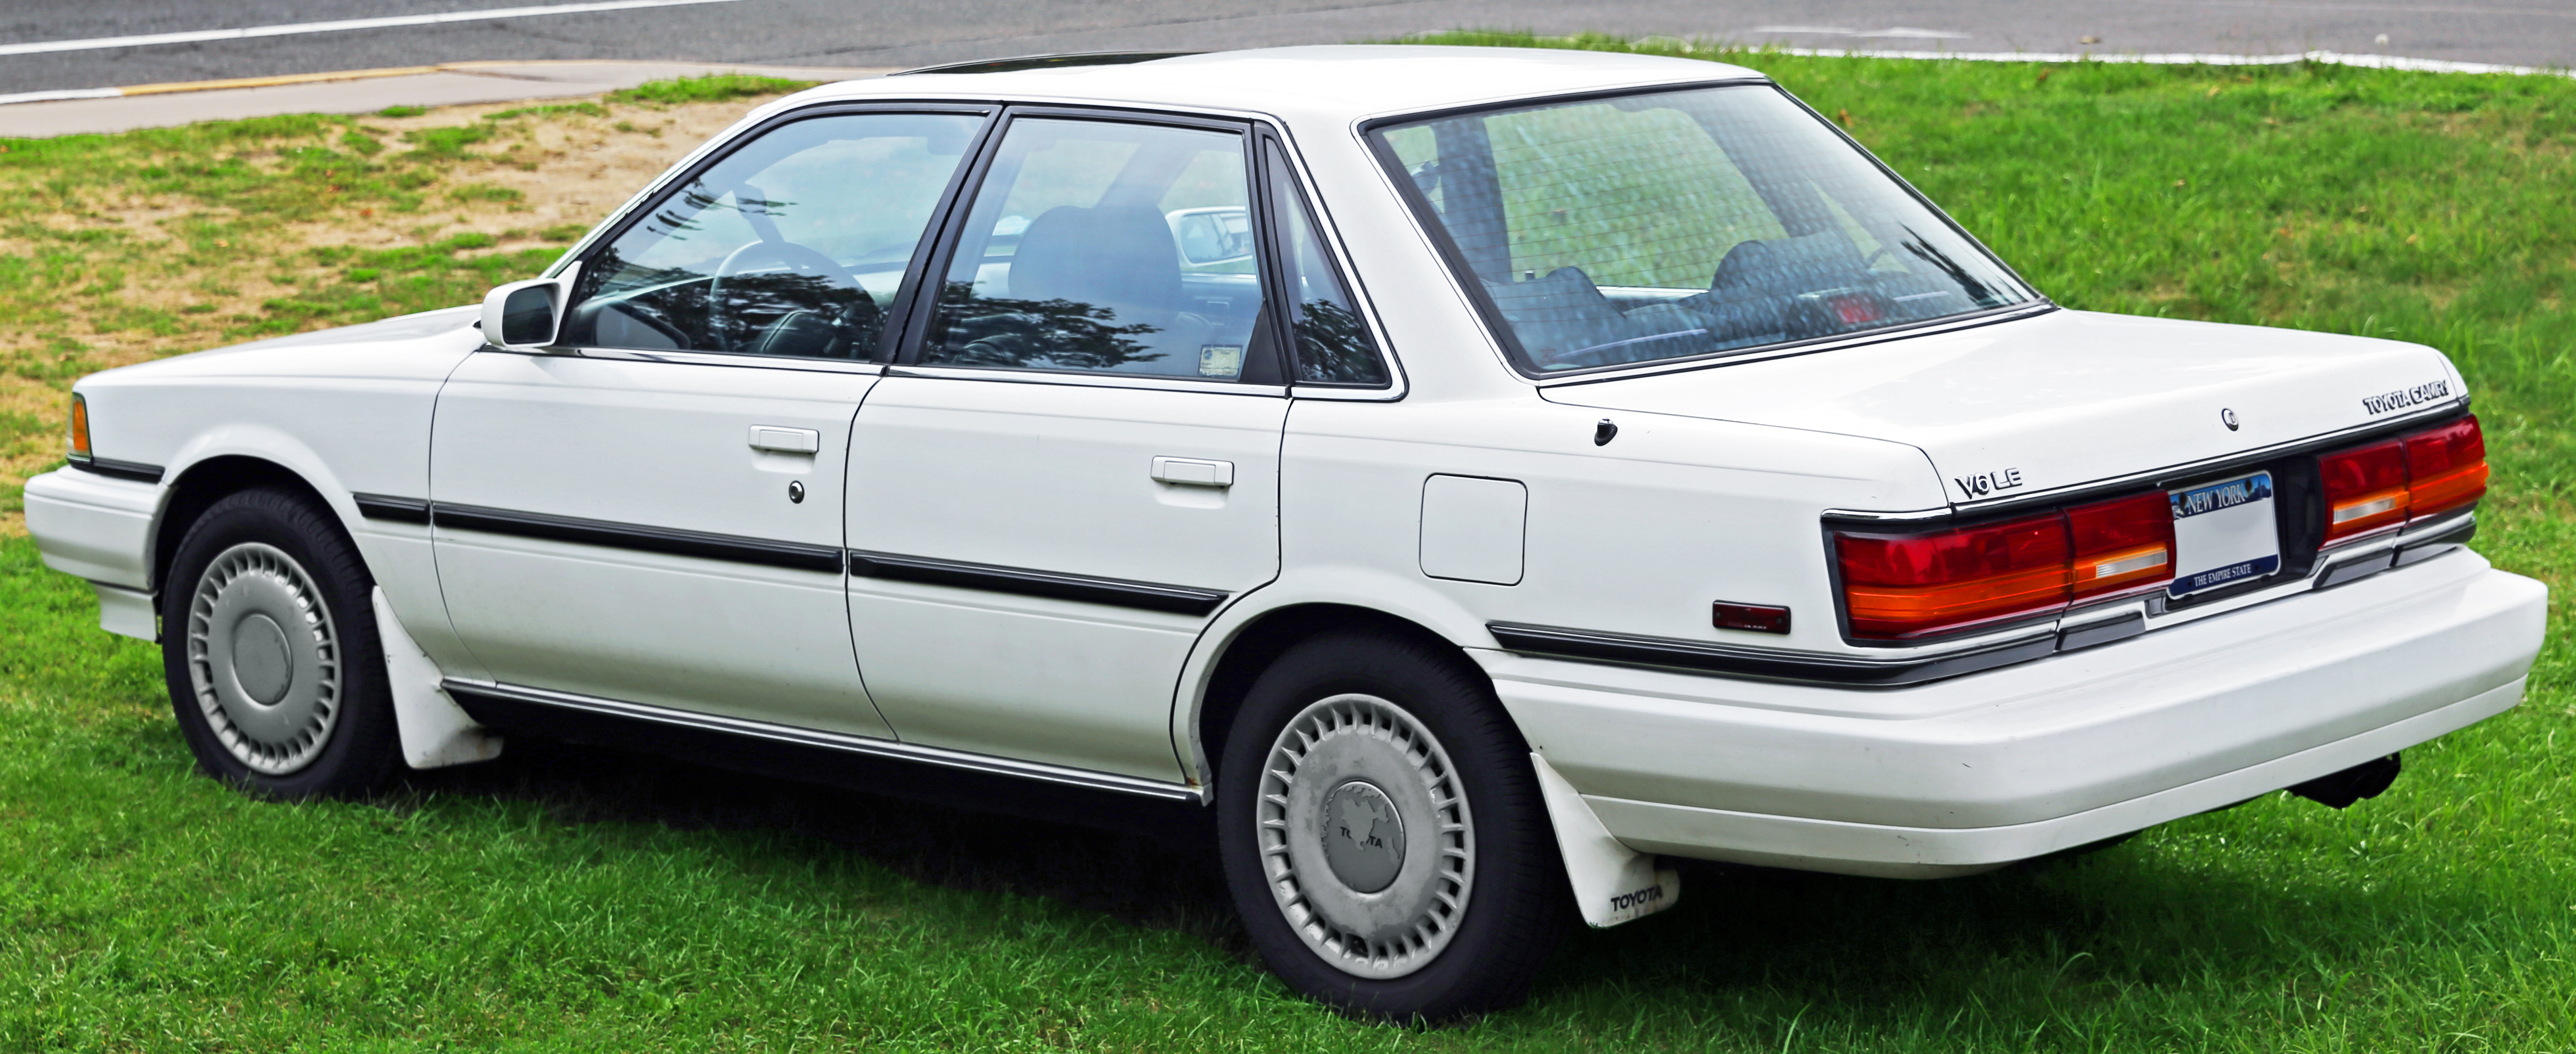 Holden Apollo 1991 - 1996 Sedan #1